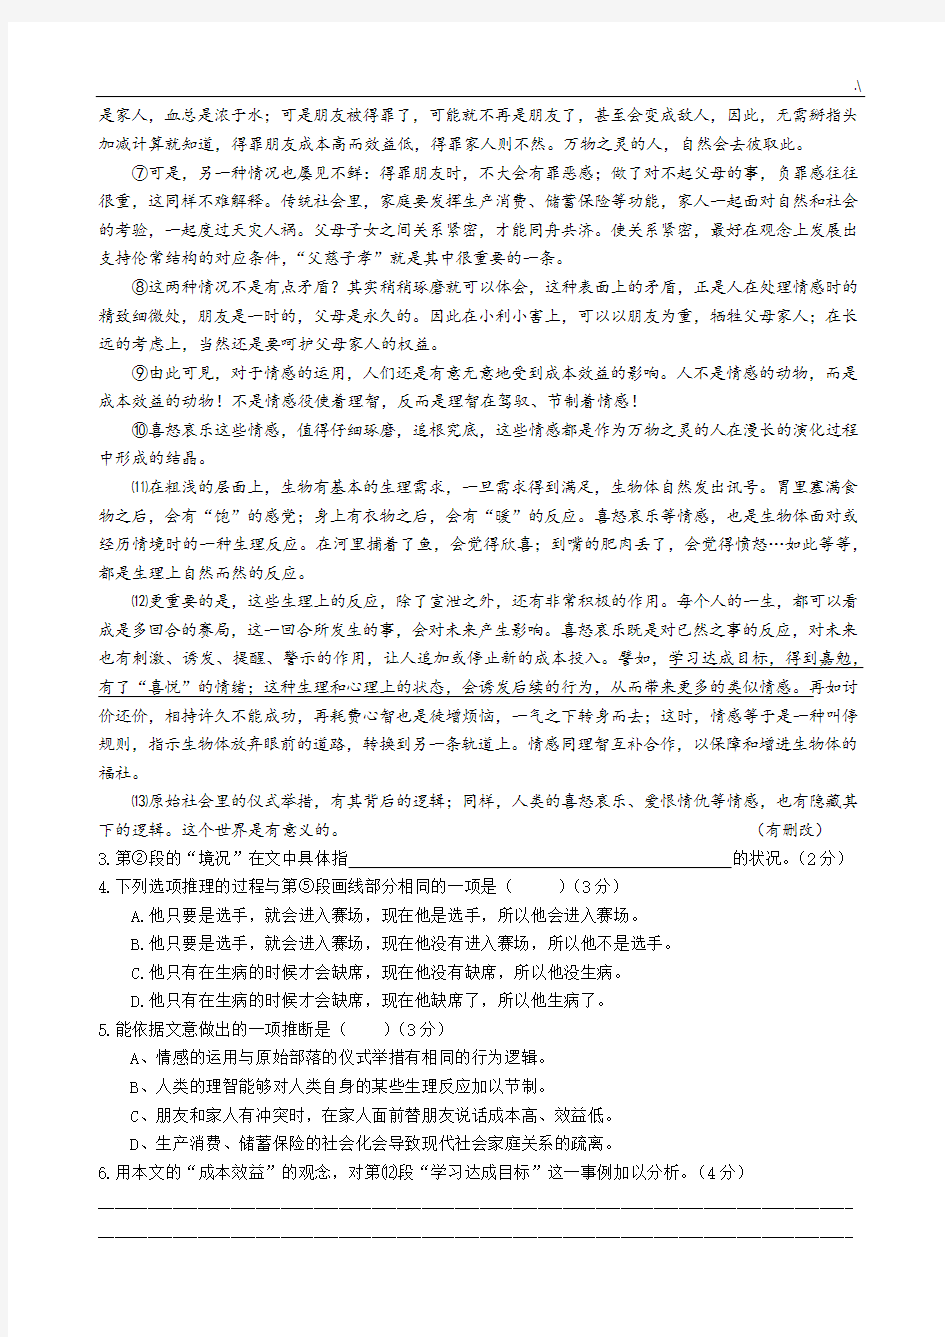 2018年度上海高考语文试卷及其规范标准答案